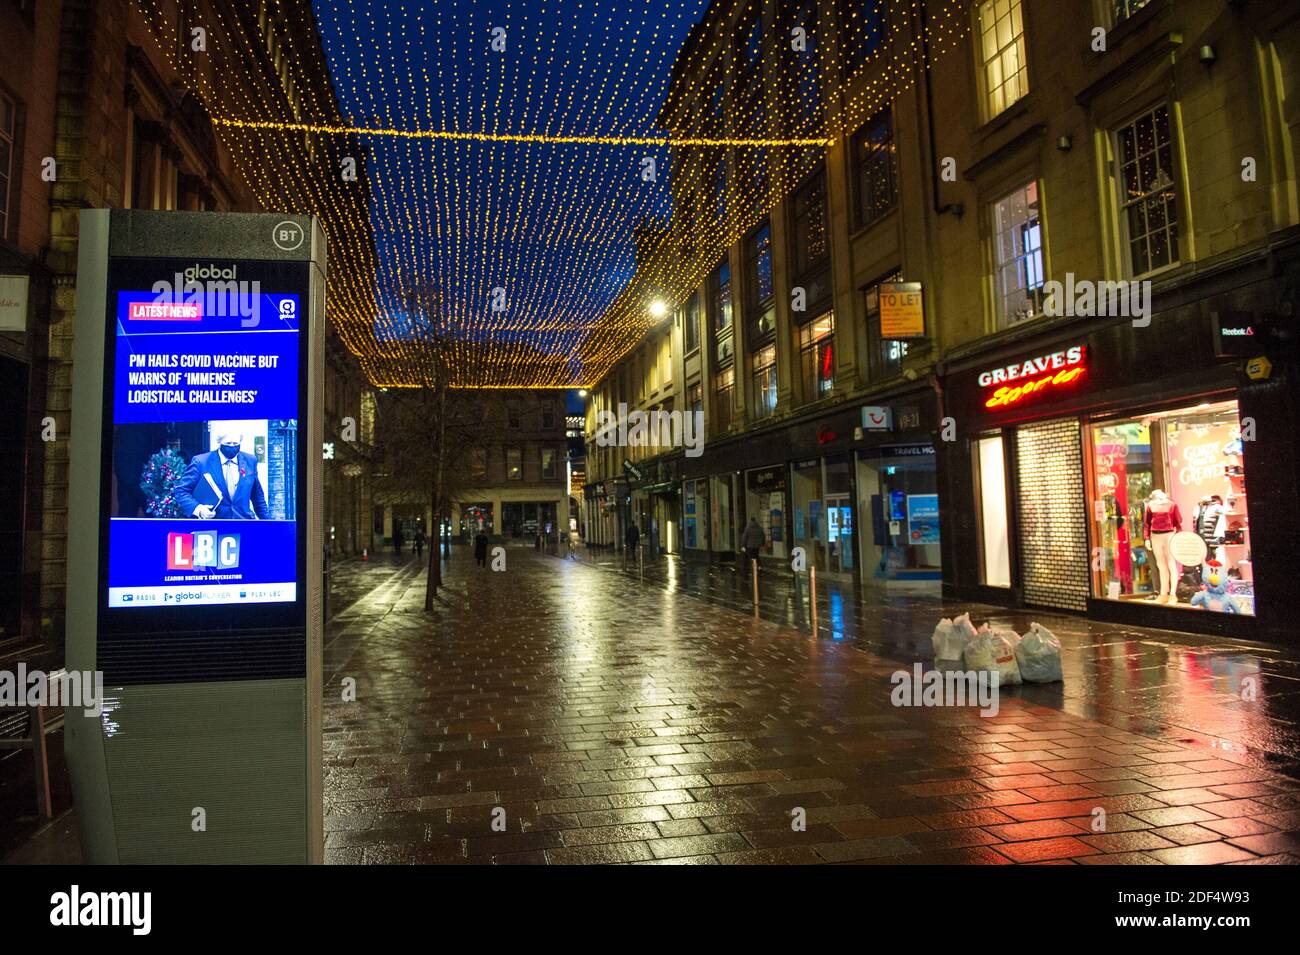 Glasgow, Schottland, Großbritannien. Dezember 2020. Im Bild: Gordon Street mit einer Live-Nachricht von LBC, die darauf hinweist: „der PM BEGRÜSST DEN COVID-IMPFSTOFF, WARNT ABER VOR ‘IMMENSEN LOGISTISCHEN HERAUSFORDERUNGEN'“-Szenen im Stadtzentrum von Glasgow, zu einer Zeit, in der Pendler viel Zeit haben sollten. Der erste Schnee ist über Nacht gefallen das Stadtzentrum ist freier Ionenschnee), aber dies hat einen Einfluss auf die Reise gemacht das Stadtzentrum sehr ruhig und leer. Quelle: Colin Fisher/Alamy Live News Stockfoto